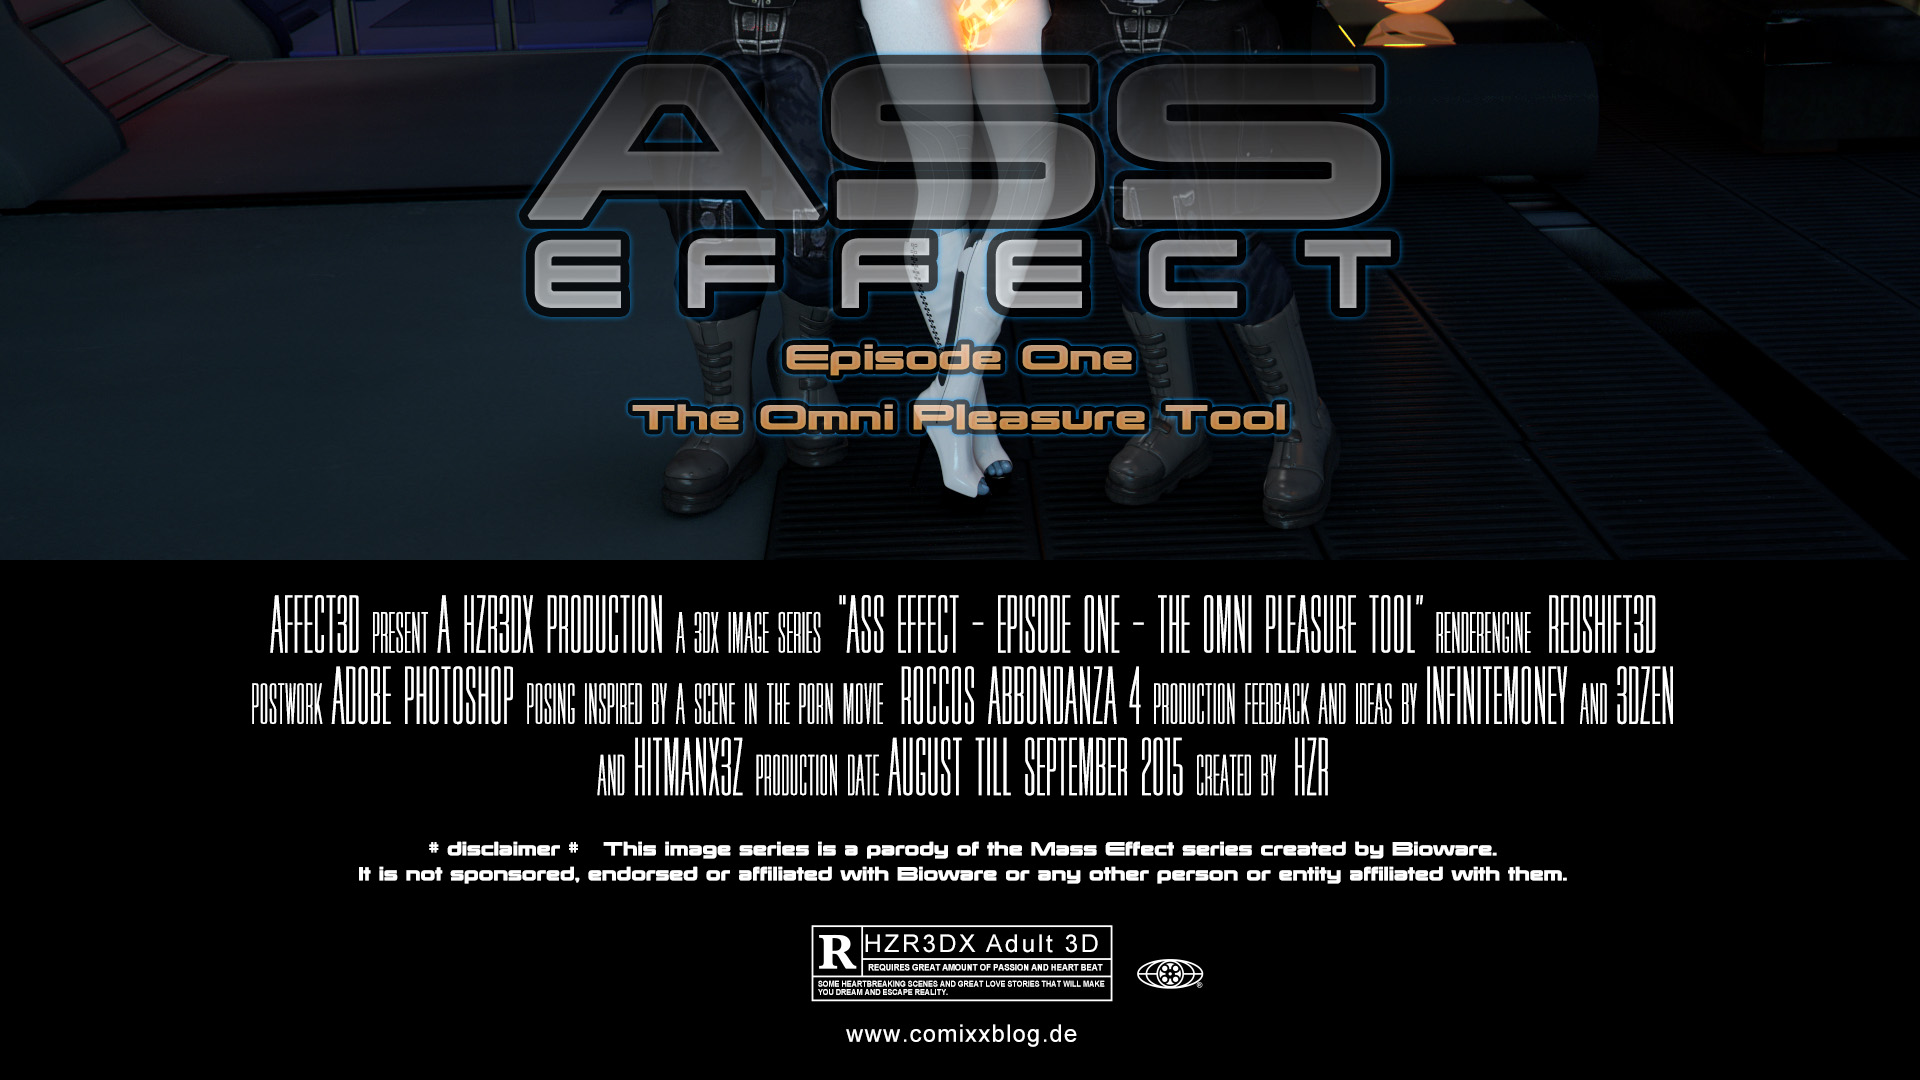 HZR - Ass Effect 3D Episode One